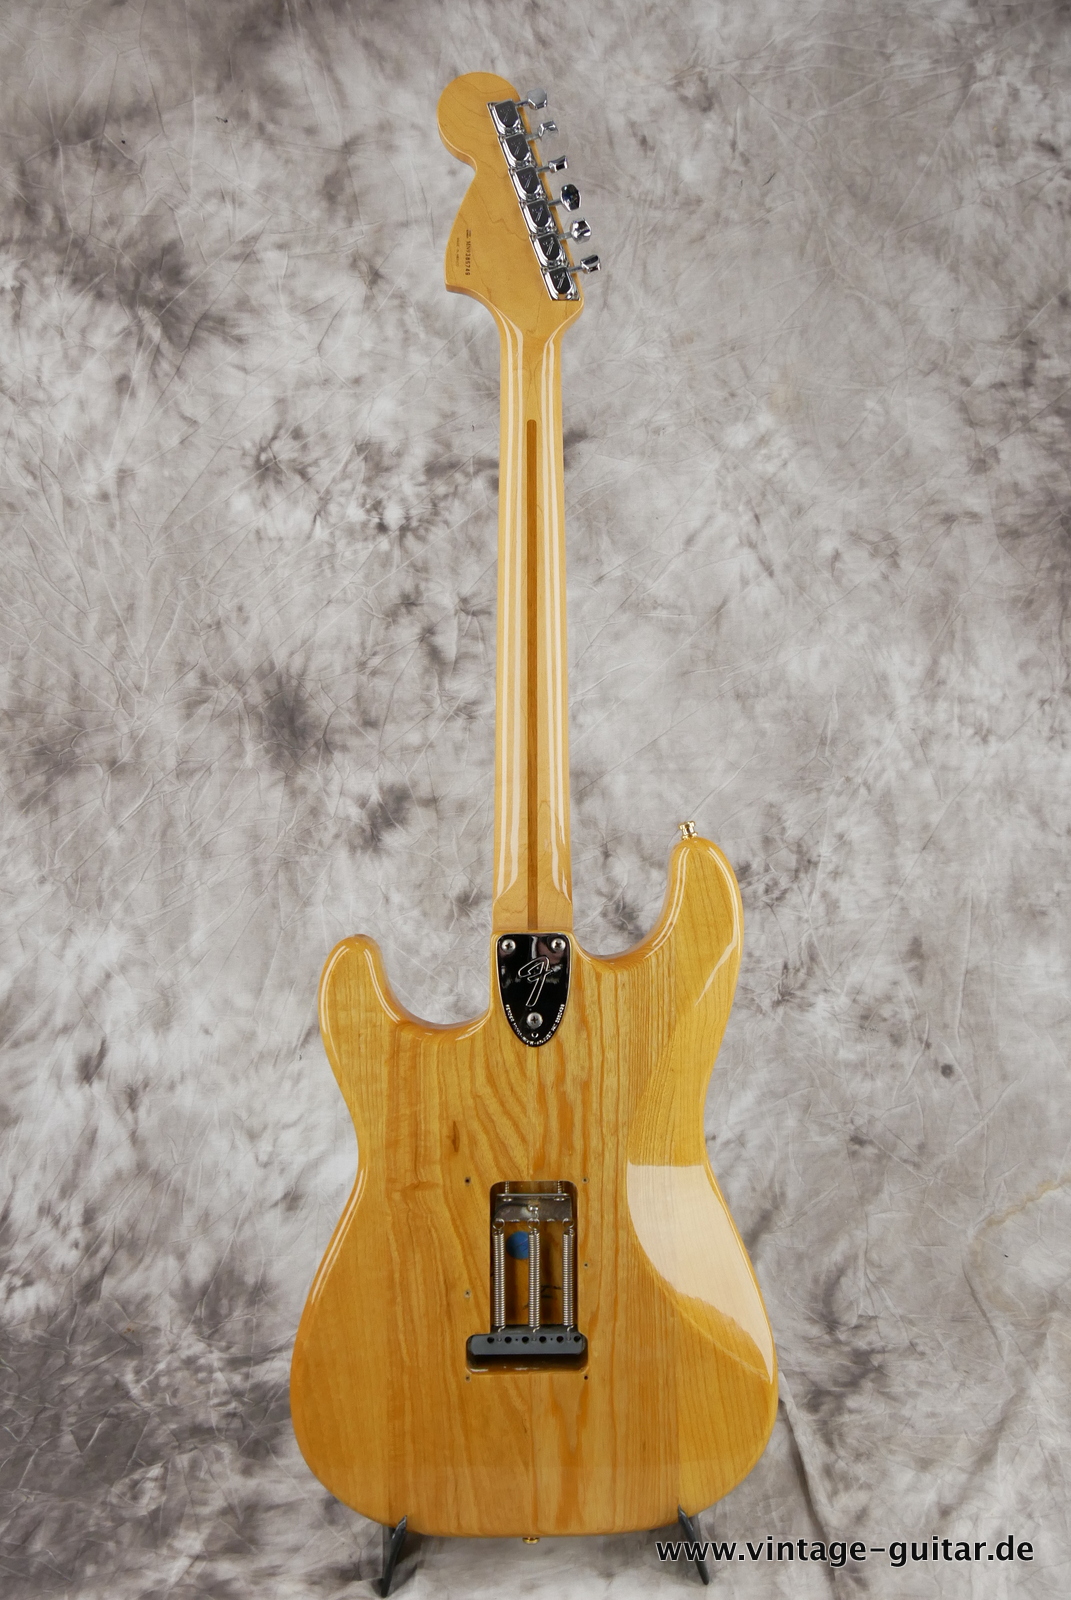 img/vintage/5322/Fender_Stratocaster_70s_reissue_maple_neck_1999_Mexico-002.JPG